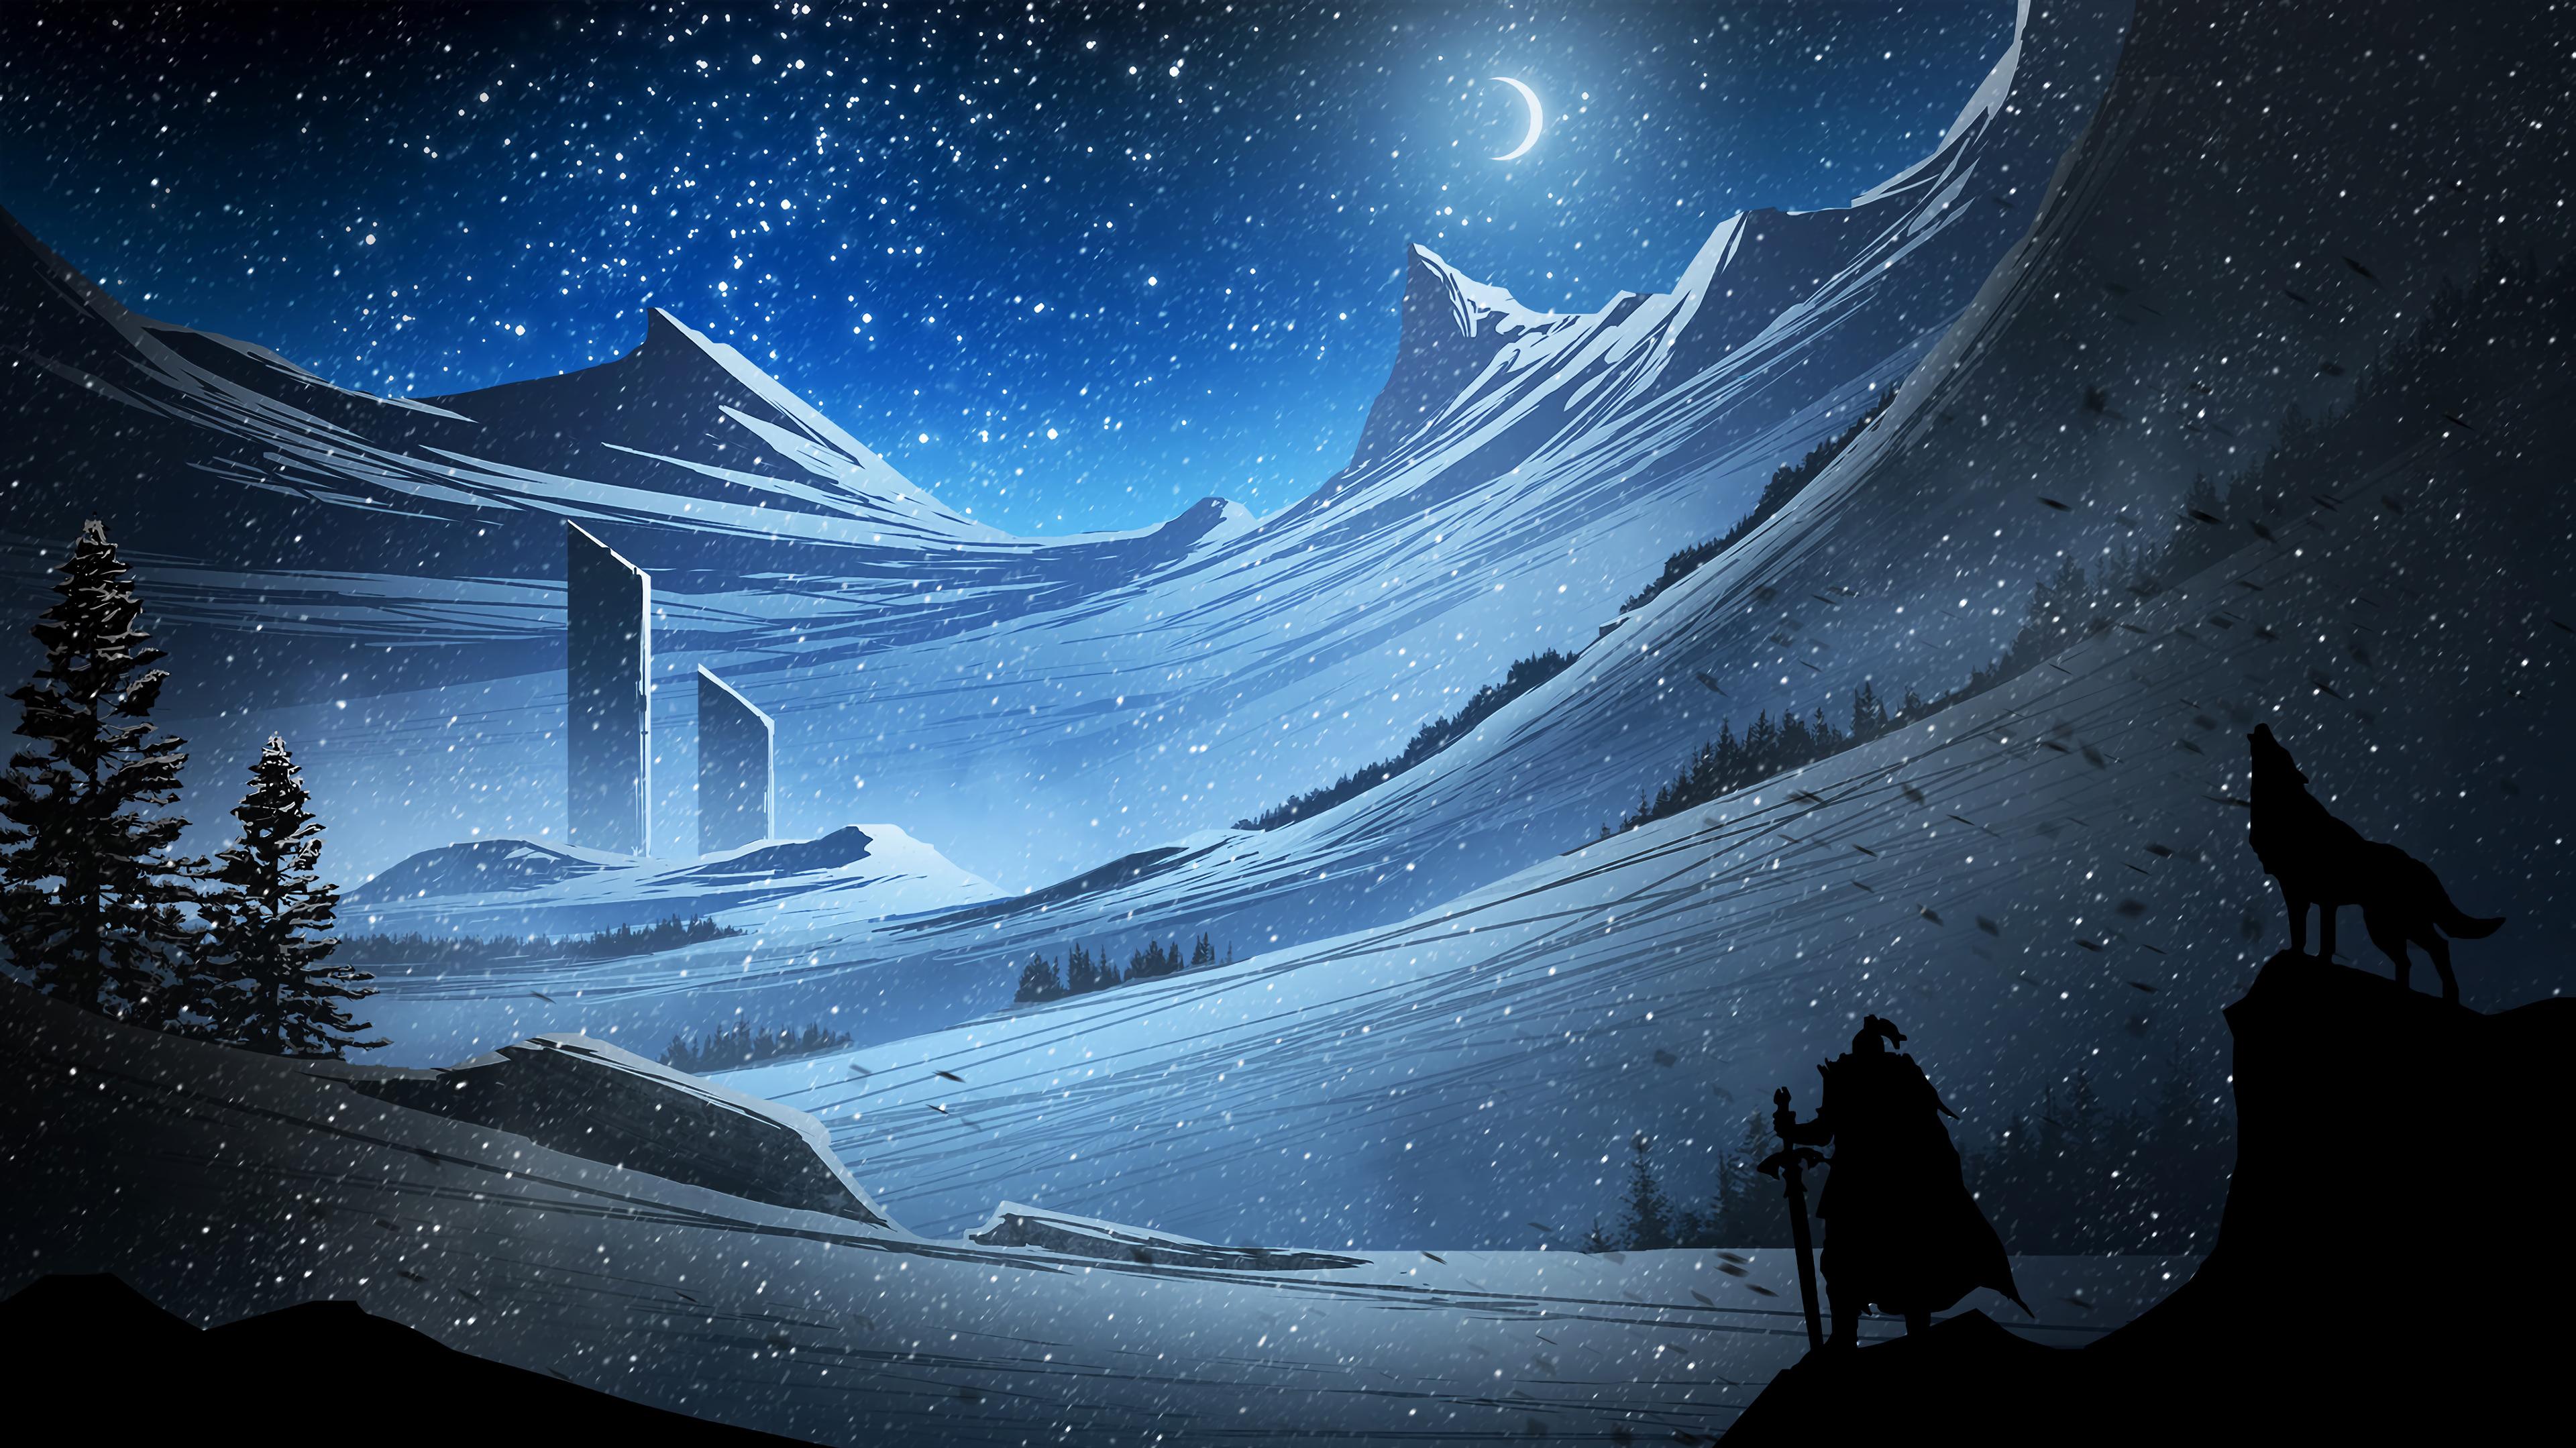 Digital Art Fantasy Snowing Scenery Landscape 4k Wallpaper